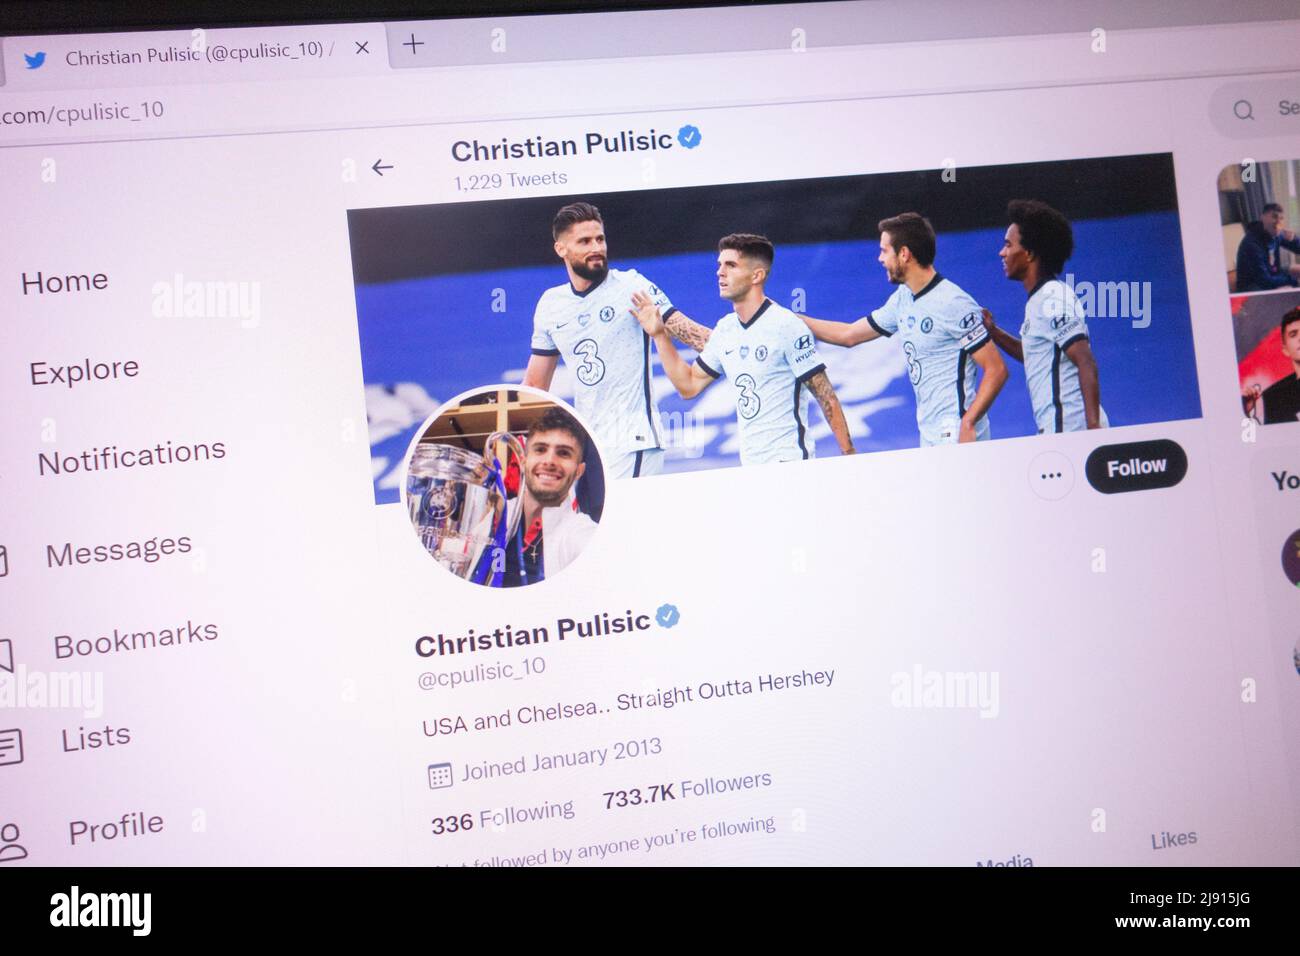 KONSKIE, POLONIA - 18 maggio 2022: Account Twitter ufficiale Christian Pulisic visualizzato sullo schermo del laptop Foto Stock